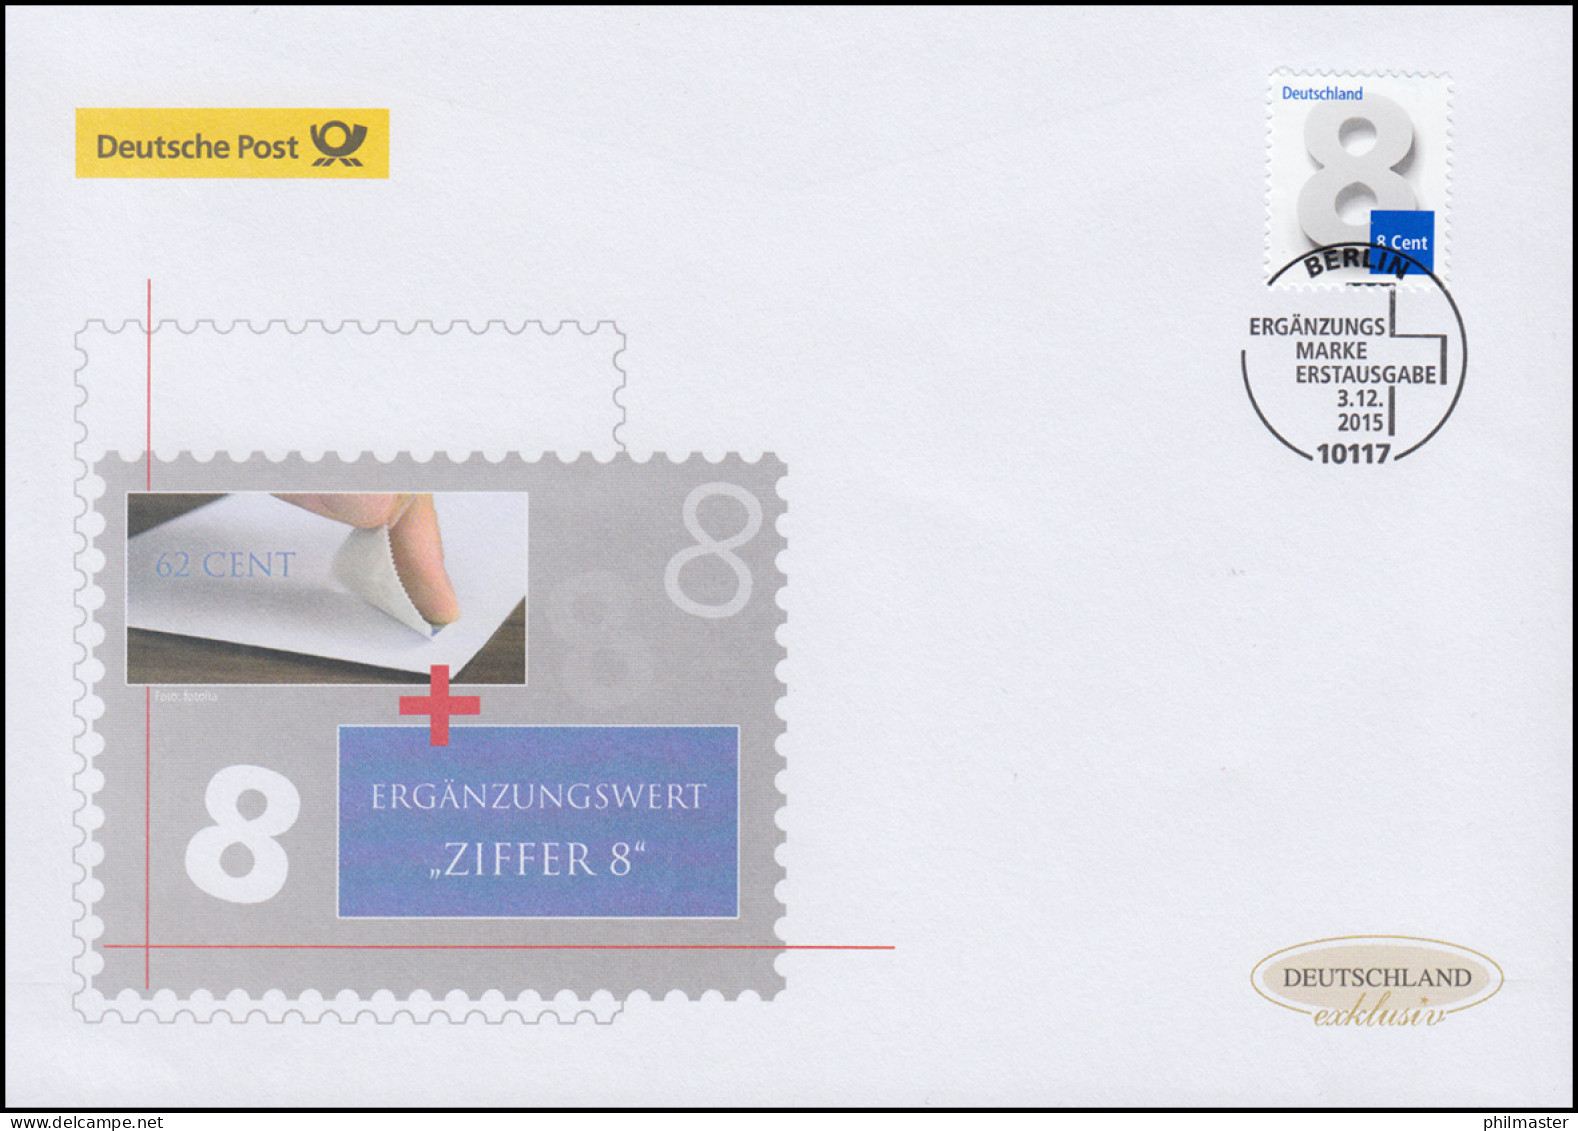 3188 Ziffernzeichnung 8 Cent, Nassklebend, Schmuck-FDC Deutschland Exklusiv - Covers & Documents